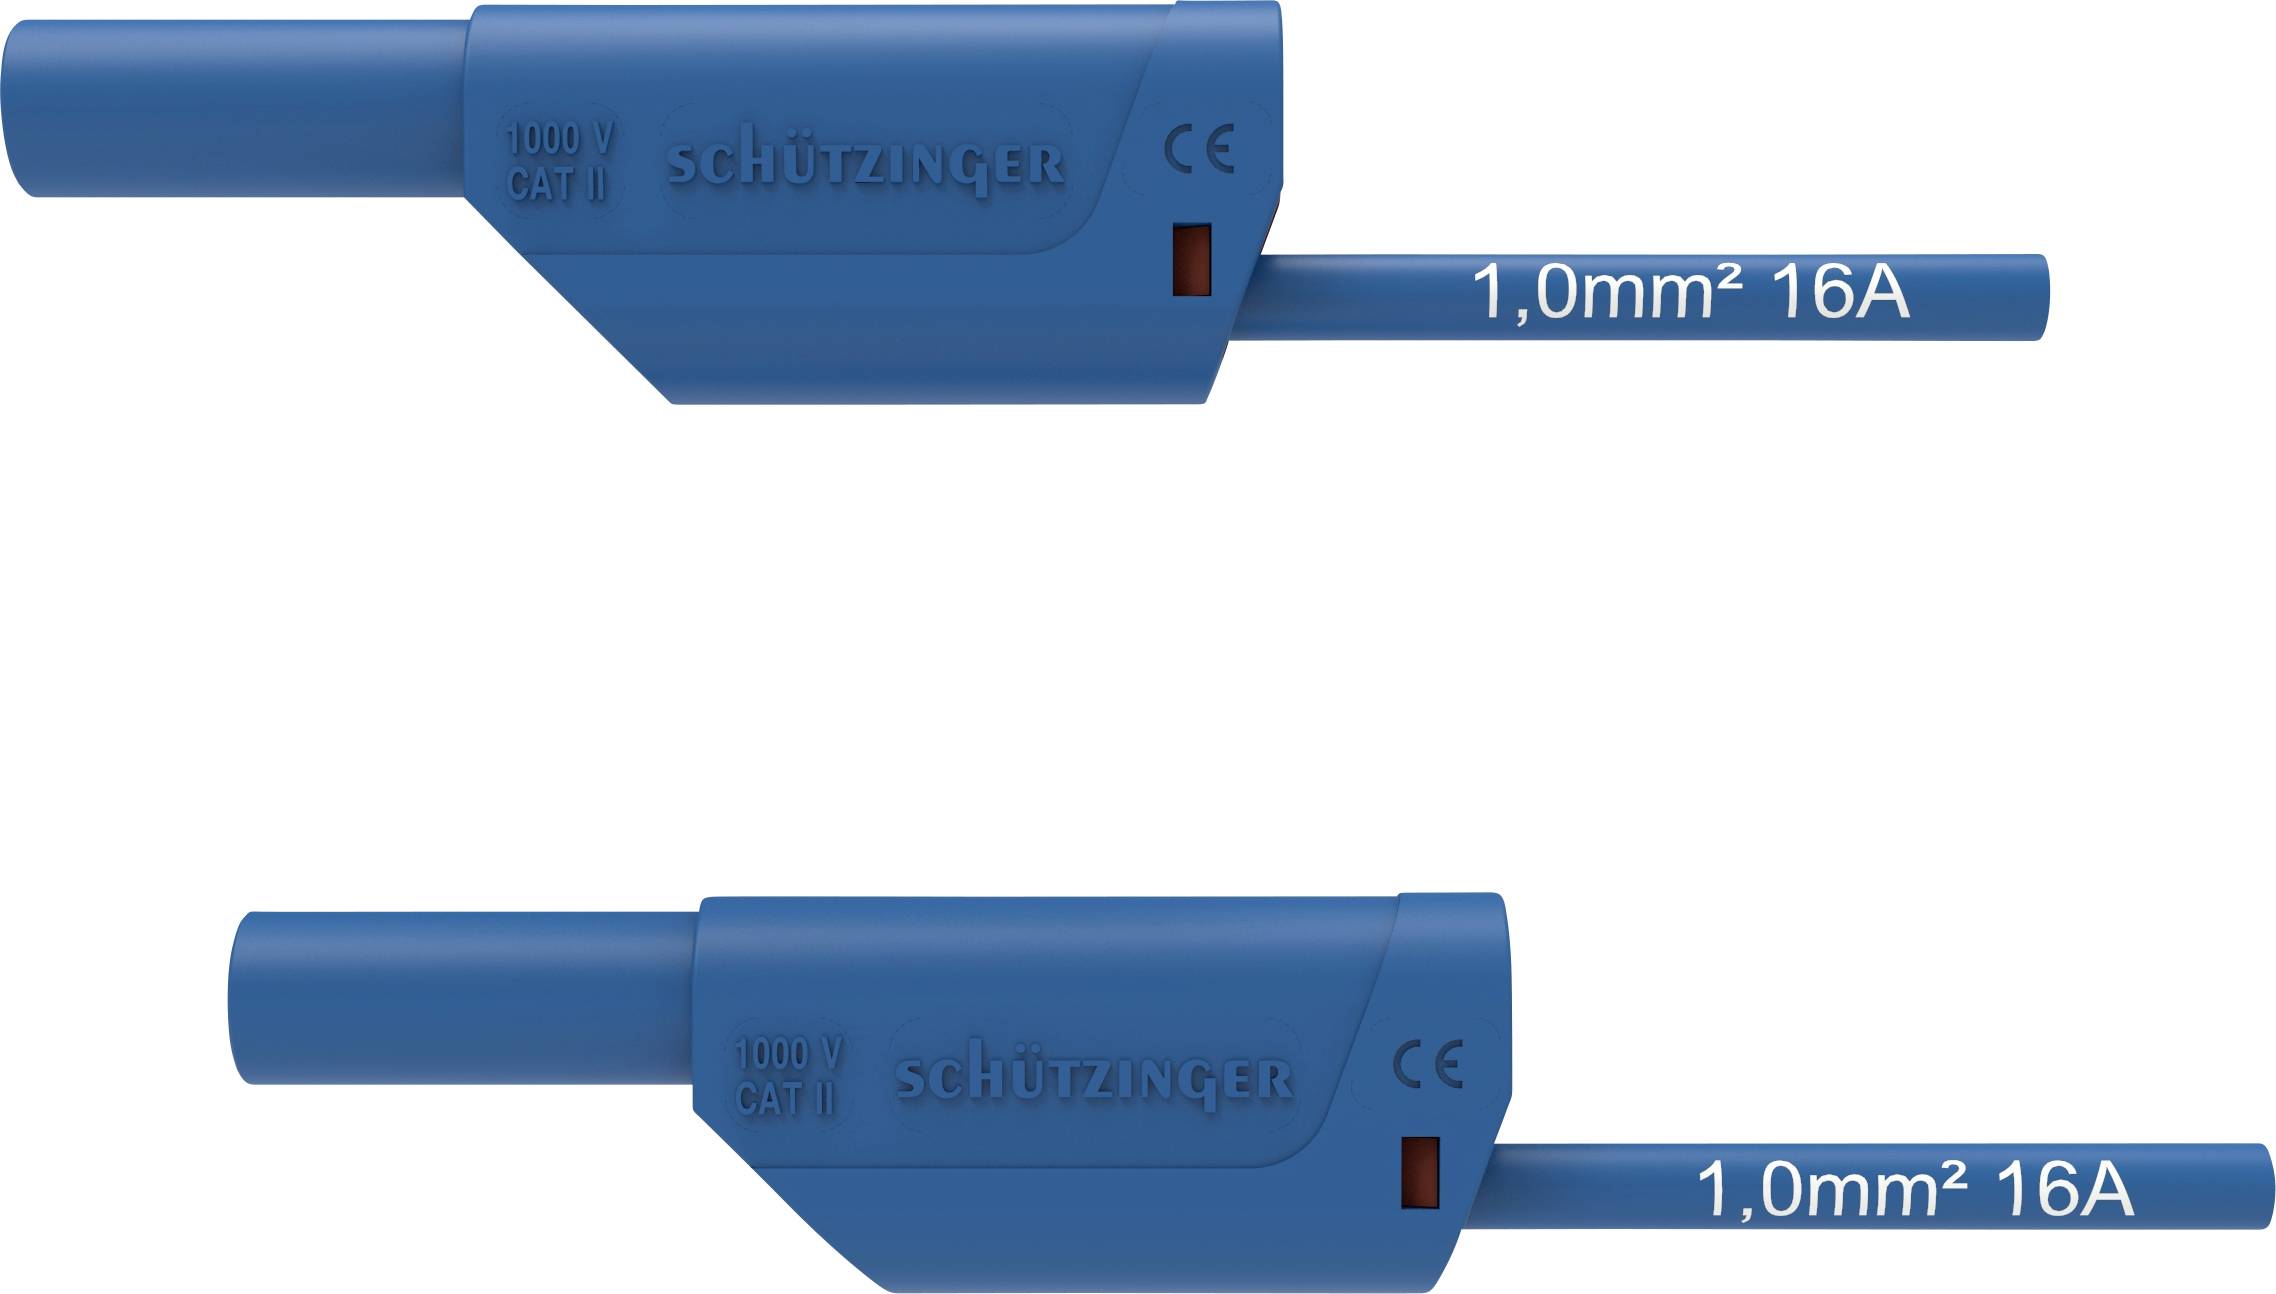 SCHÜTZINGER VSFK 8500 / 1 / 50 / BL Sicherheits-Messleitung [4 mm-Stecker - 4 mm-Stecker] 50.00